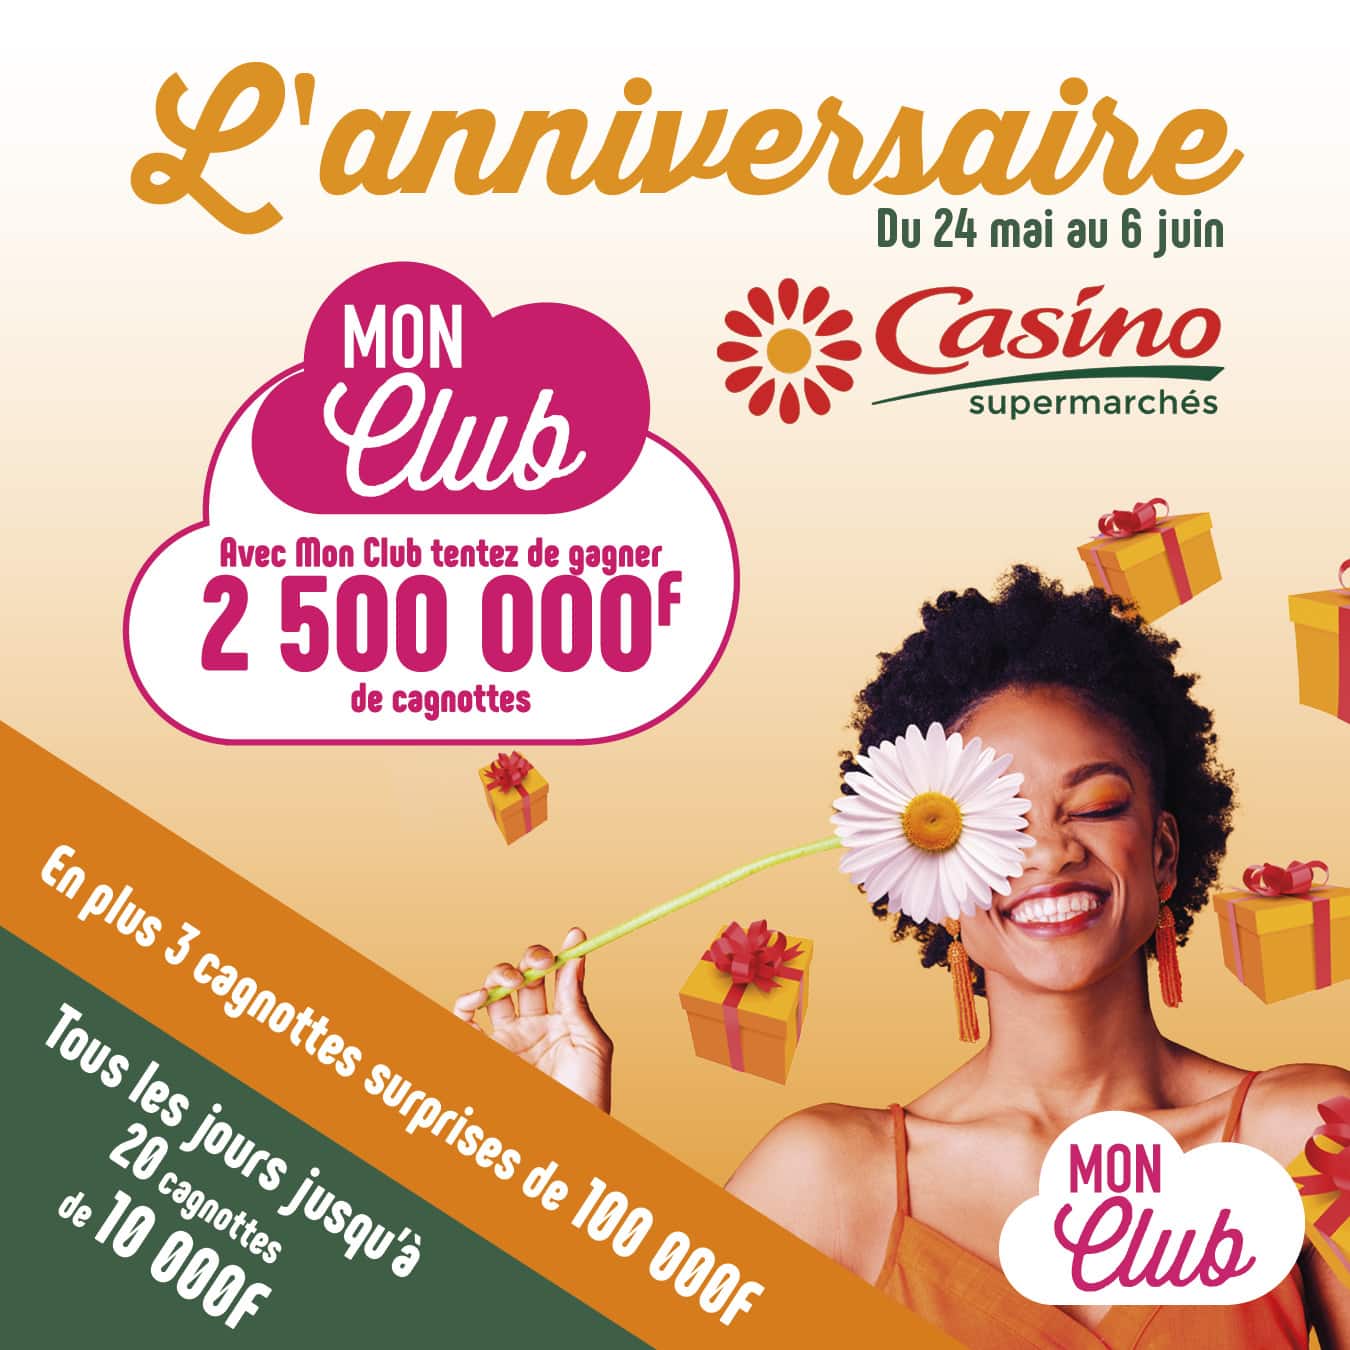 C Est L Anniversaire De Vos Supermarches Casino Mon Club Nc